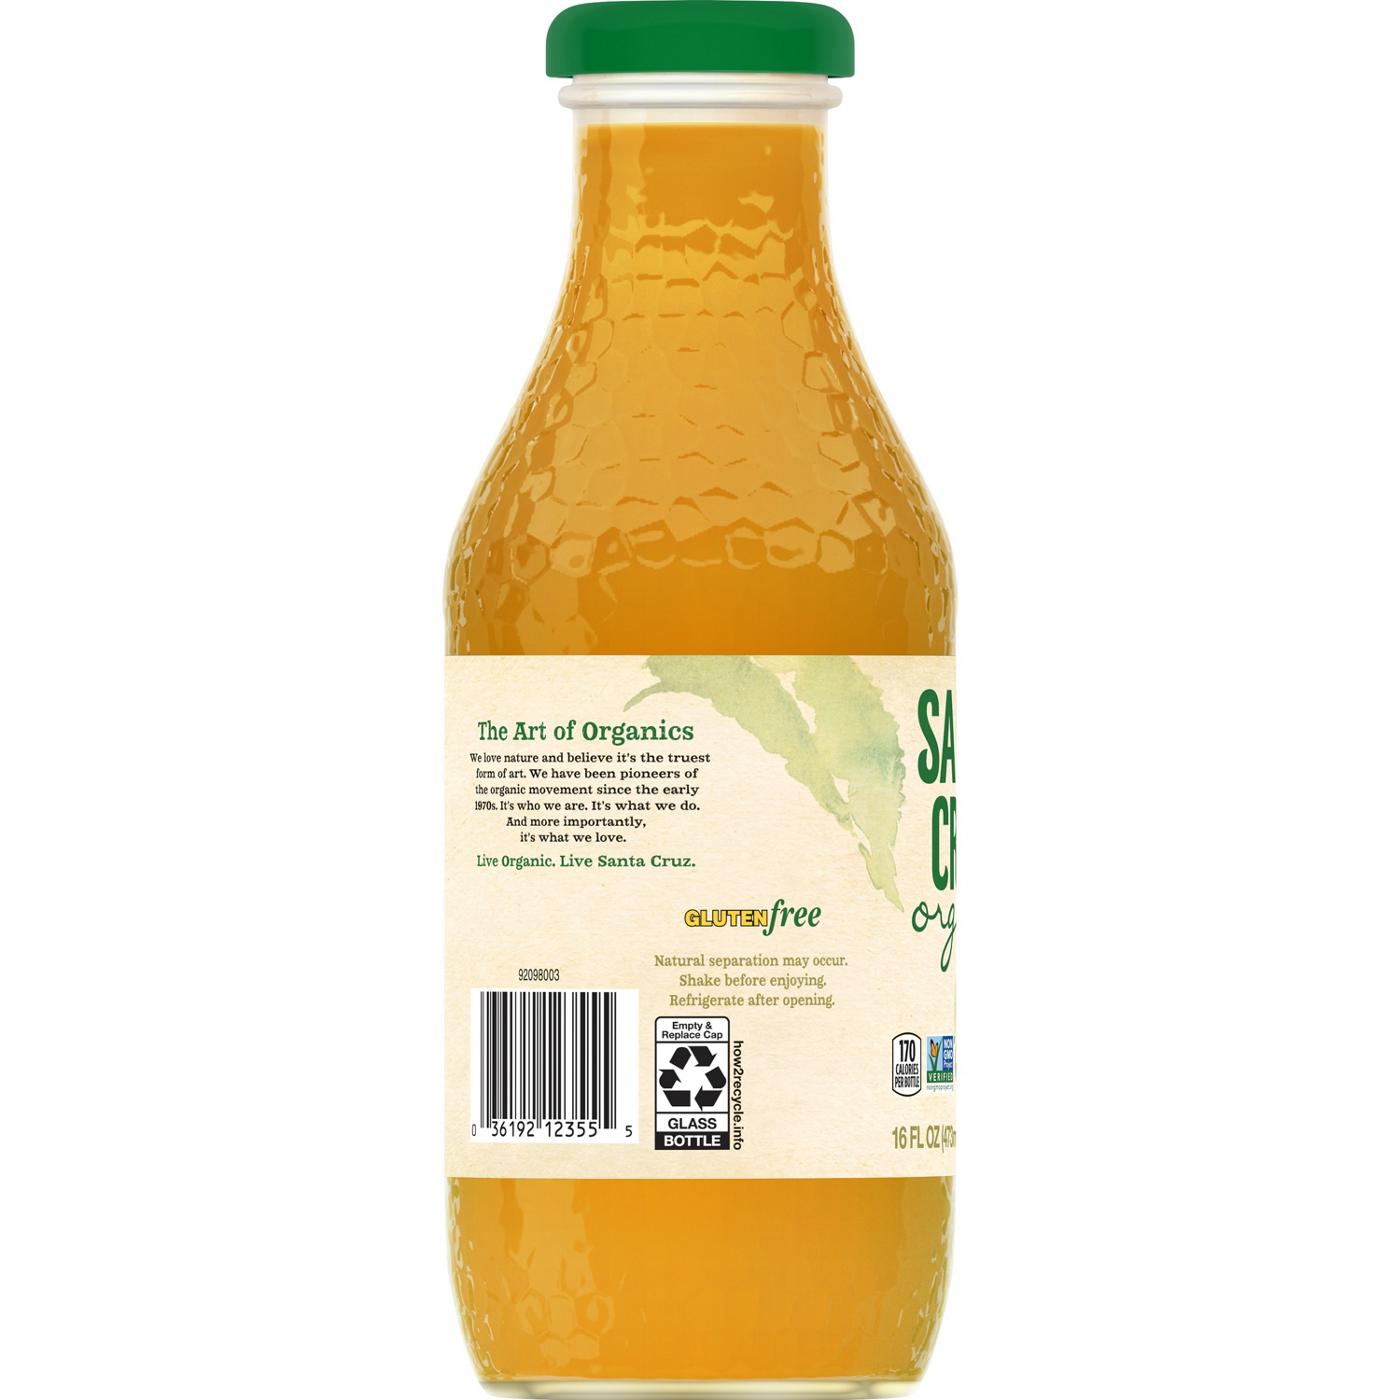 Santa Cruz Organic Mango Lemonade Beverage; image 2 of 3